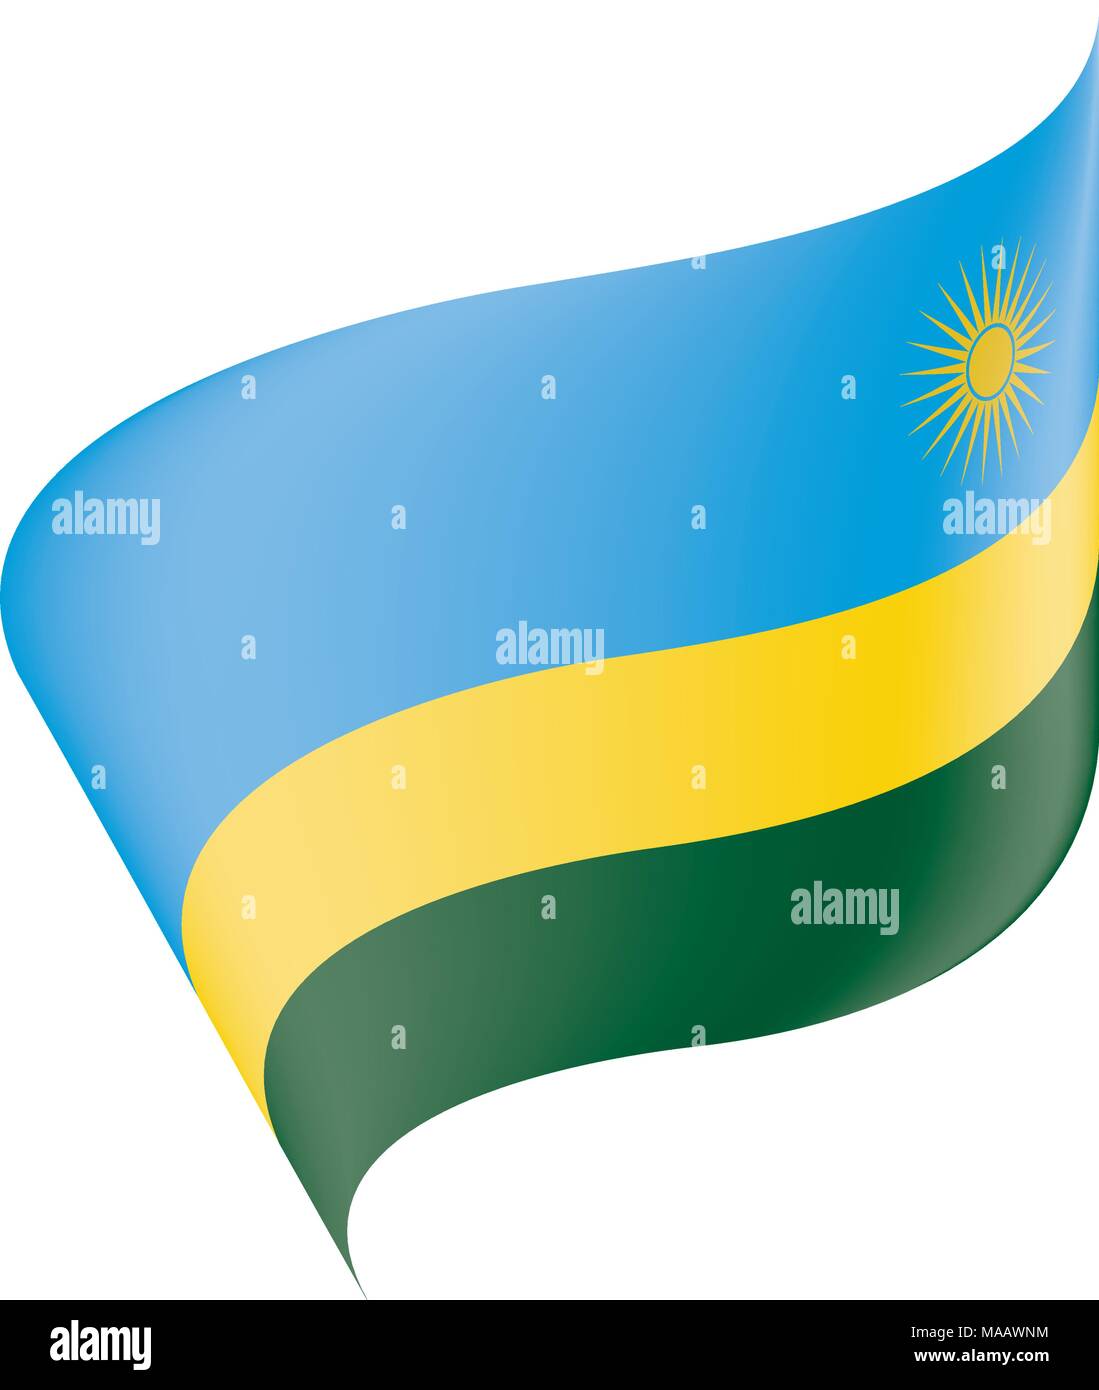 Rwanda flag, vector illustration Stock Vector